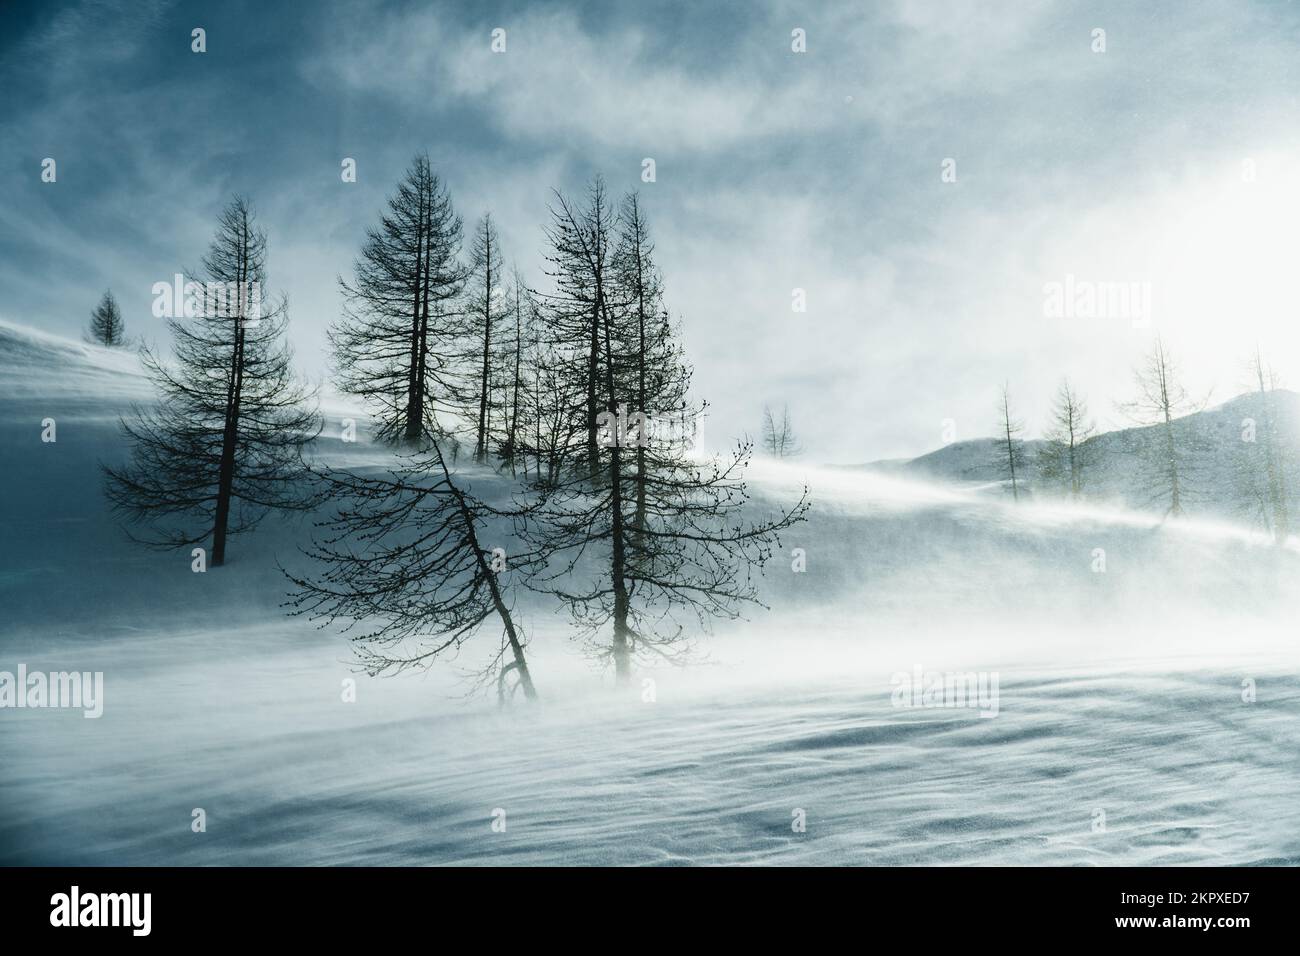 Winter storm in mountains, Austrian Alps, Gastein, Salzburg, Austria Stock Photo